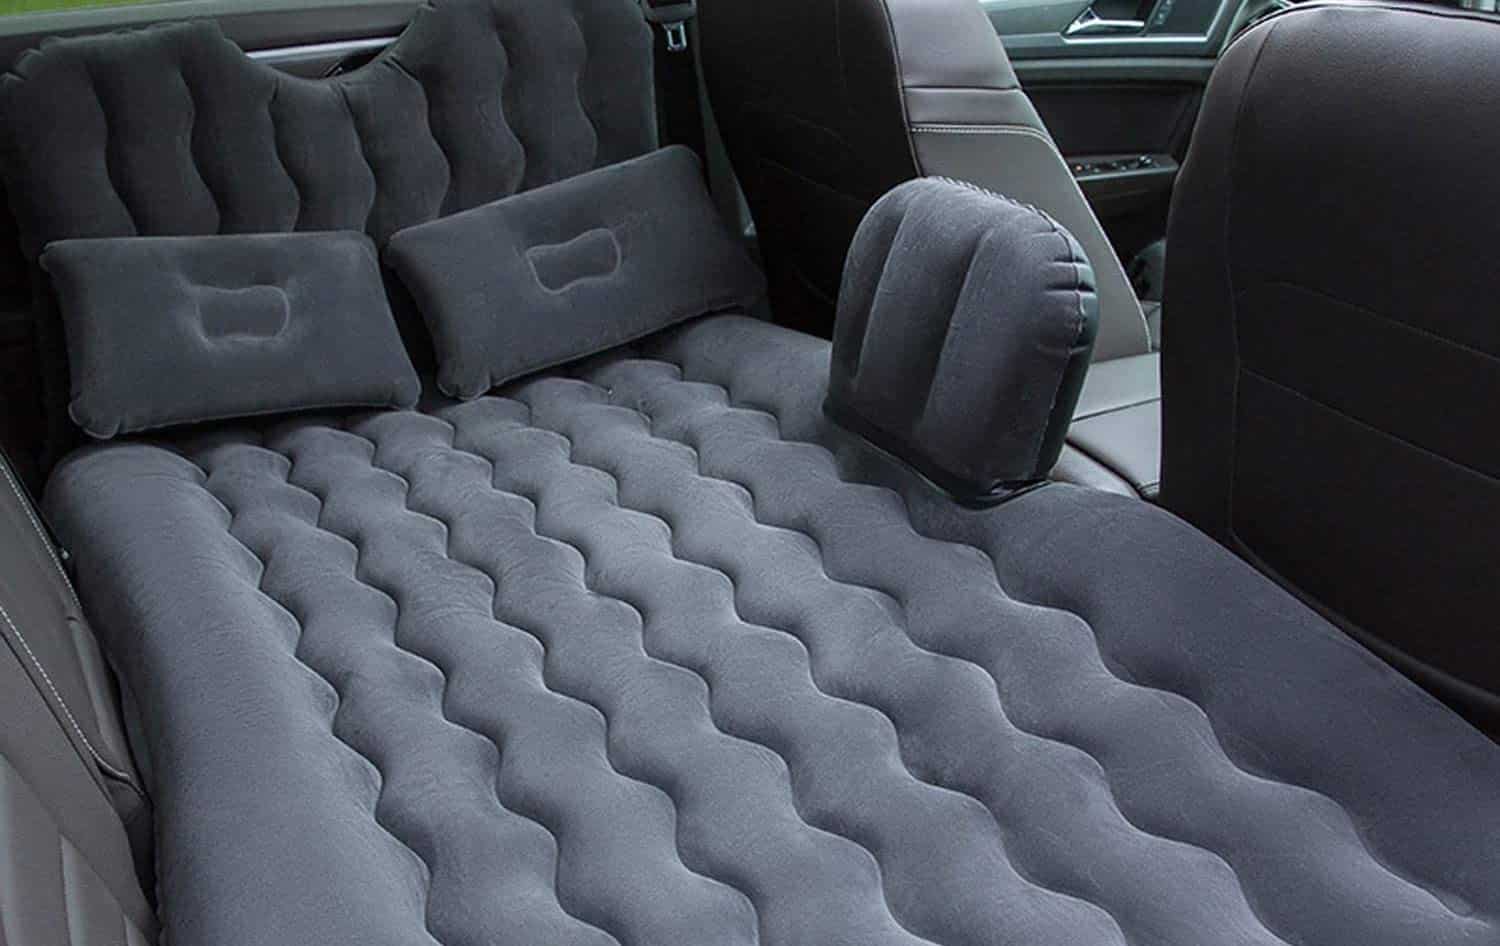 air mattress for the car